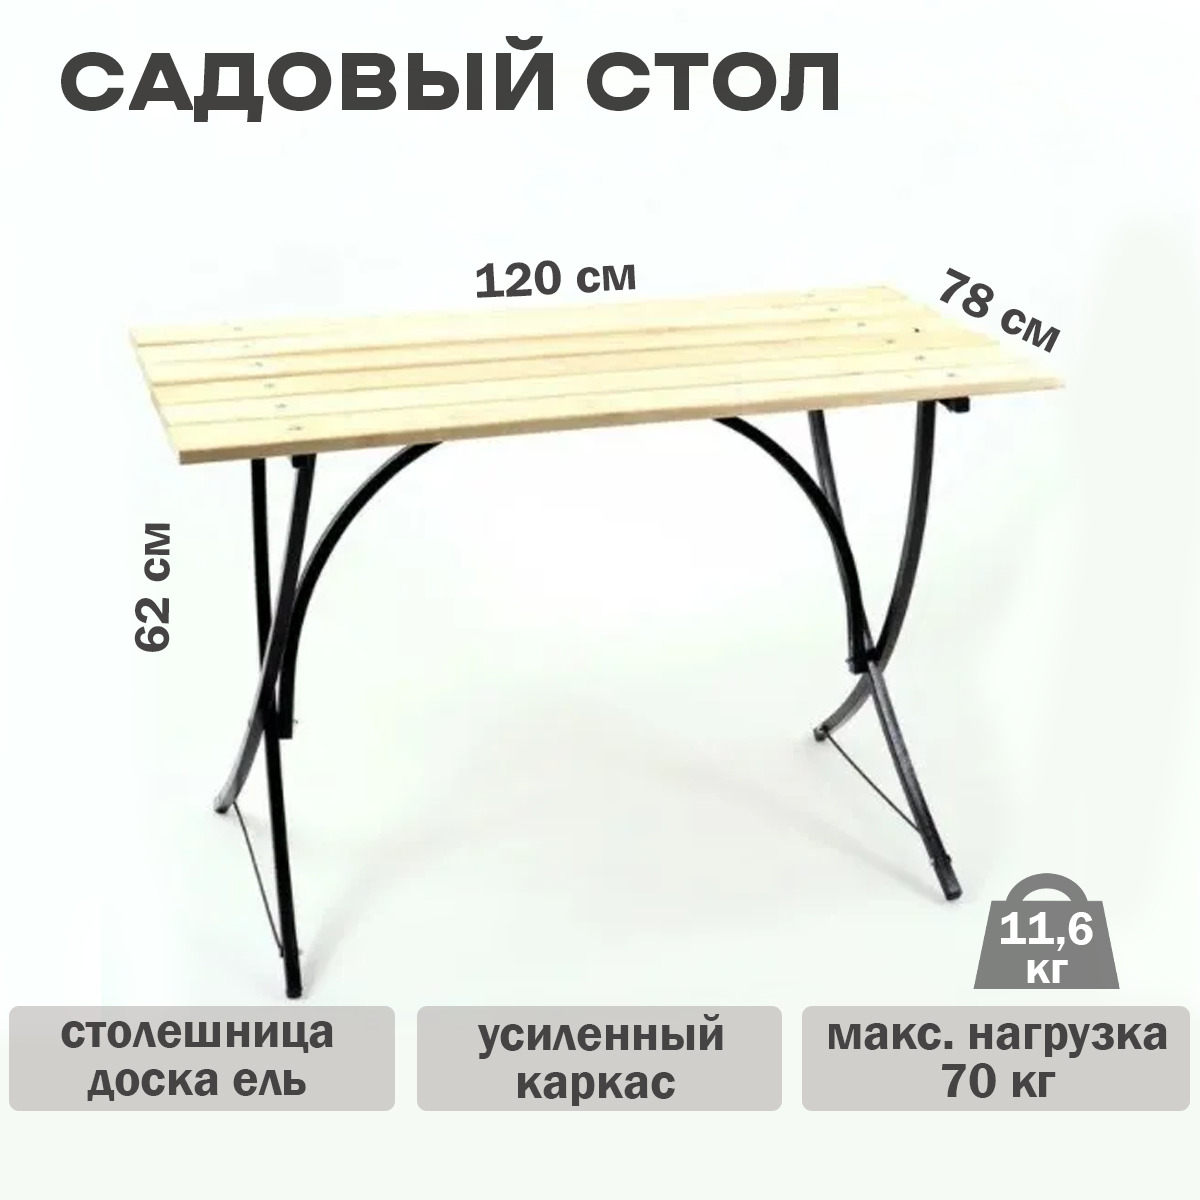 стол из светофора кухонный с металлическими ножками размер